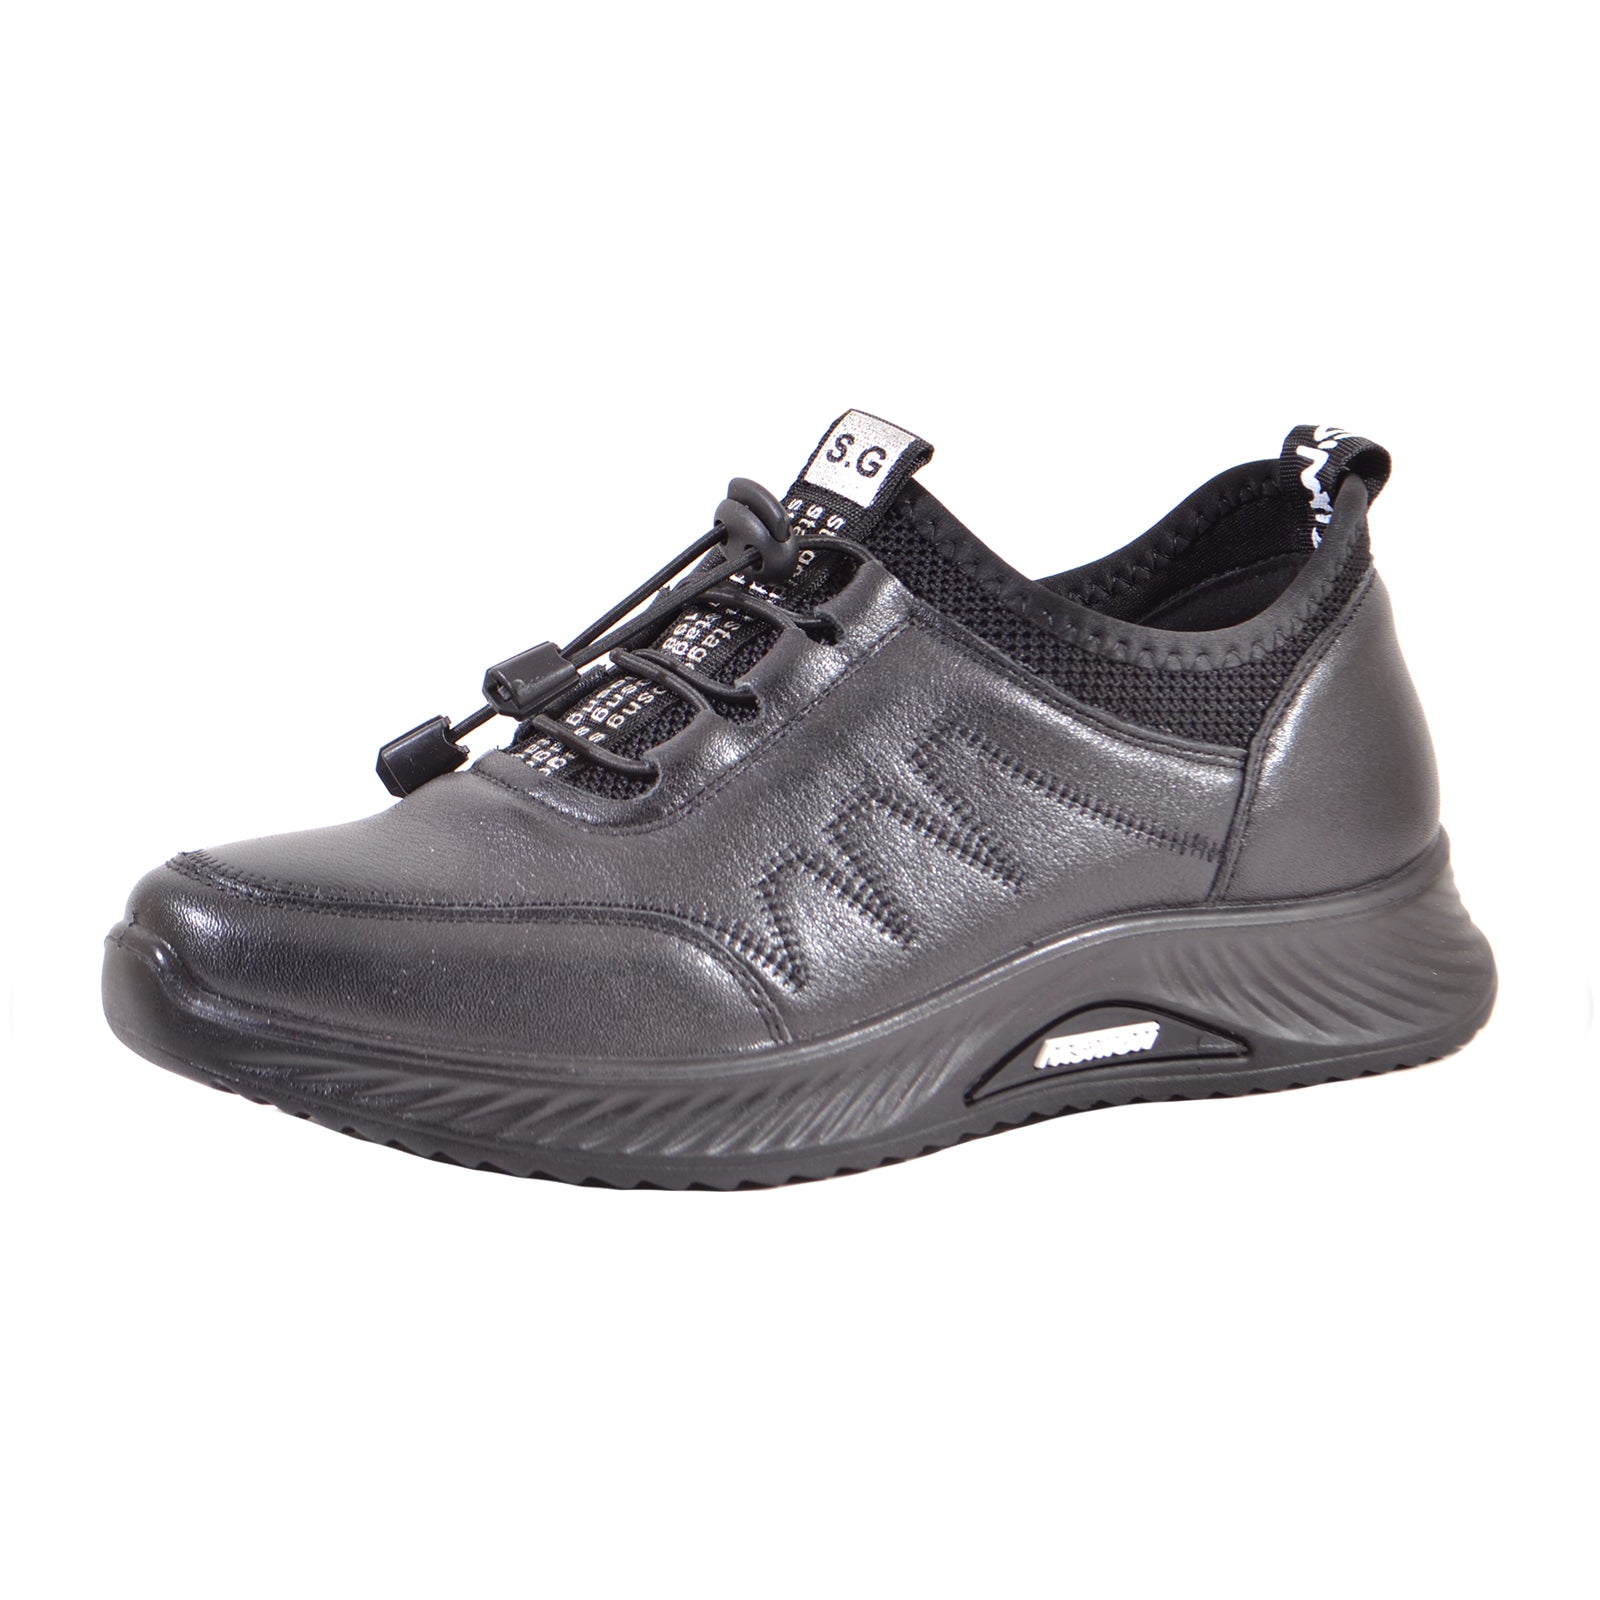 Pantofi Formazione 1133 Black